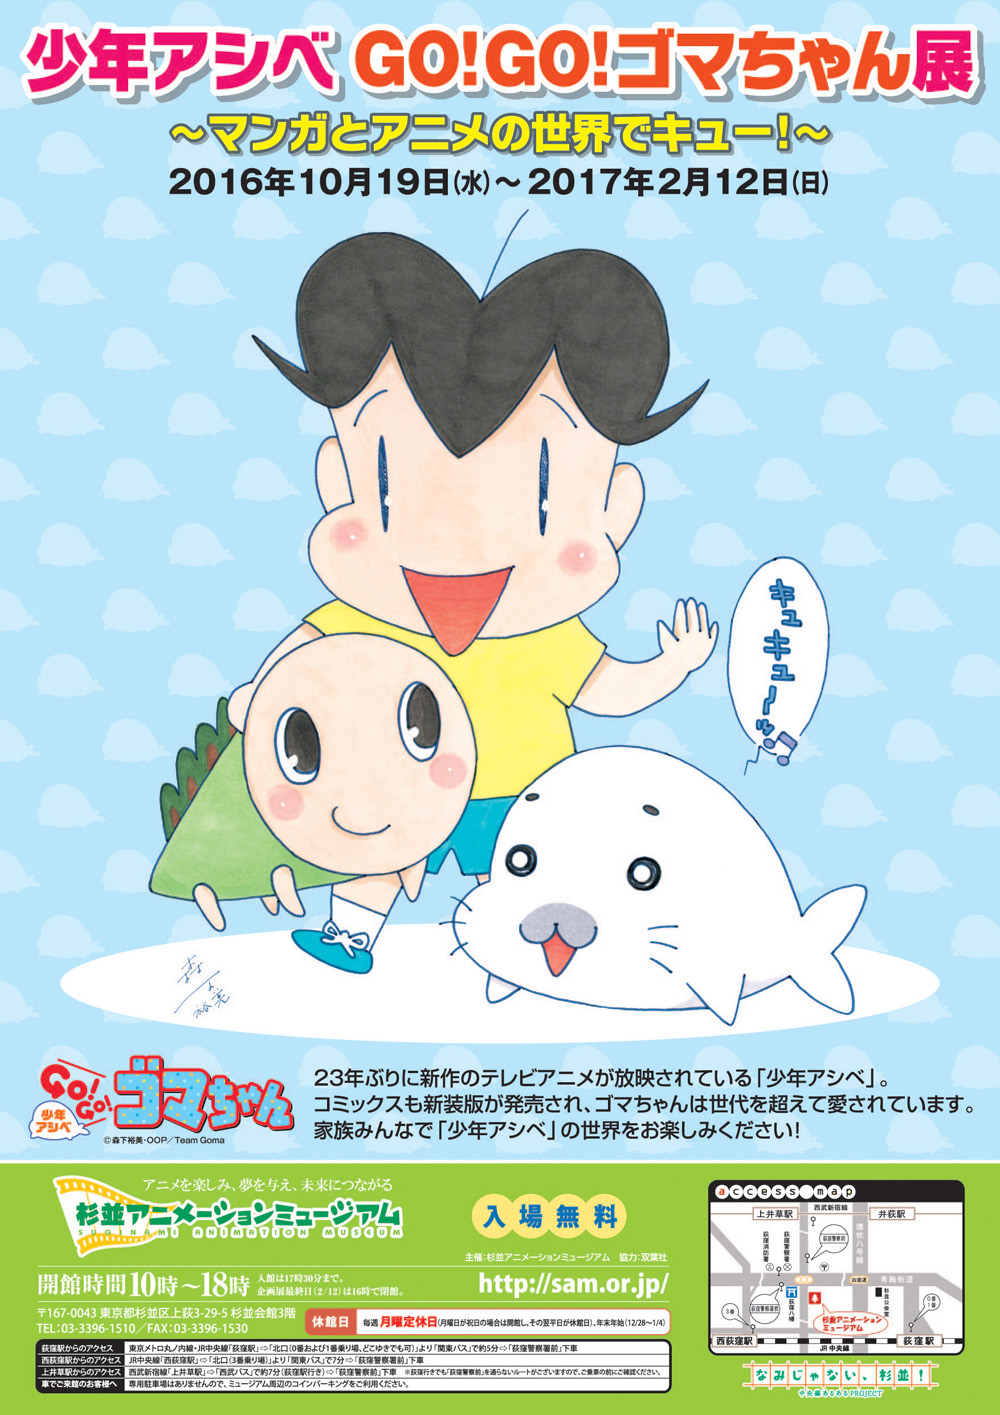 少年アシベ Go Go ゴマちゃん展 マンガとアニメの世界でキュー 開催